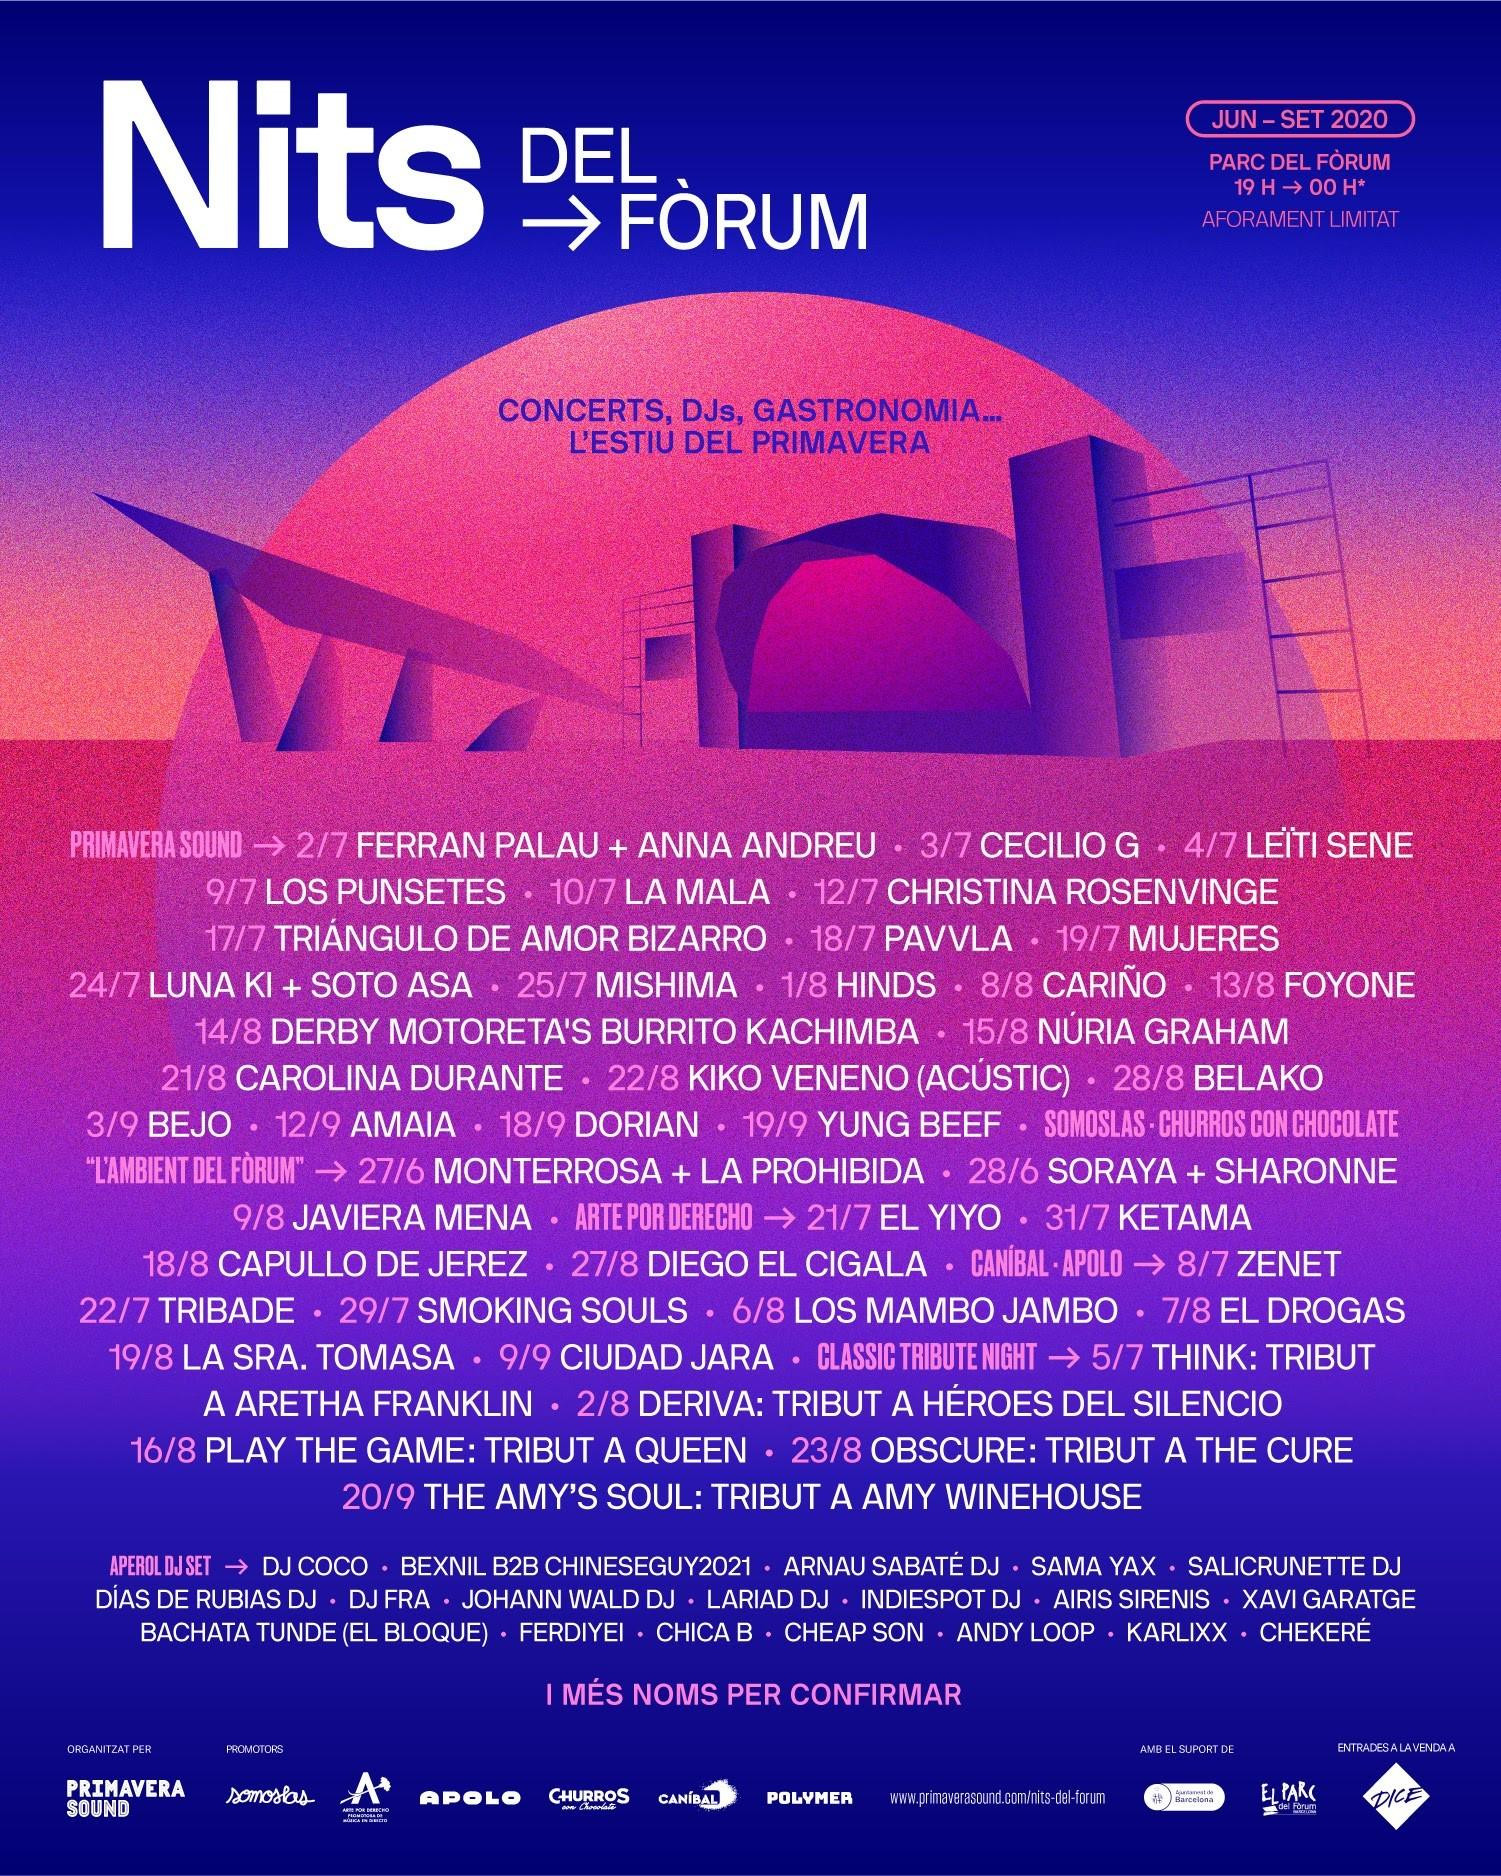 Cartel de las 'Nits del Fòrum', organizado por Primavera Sound cuenta 70 noches musica